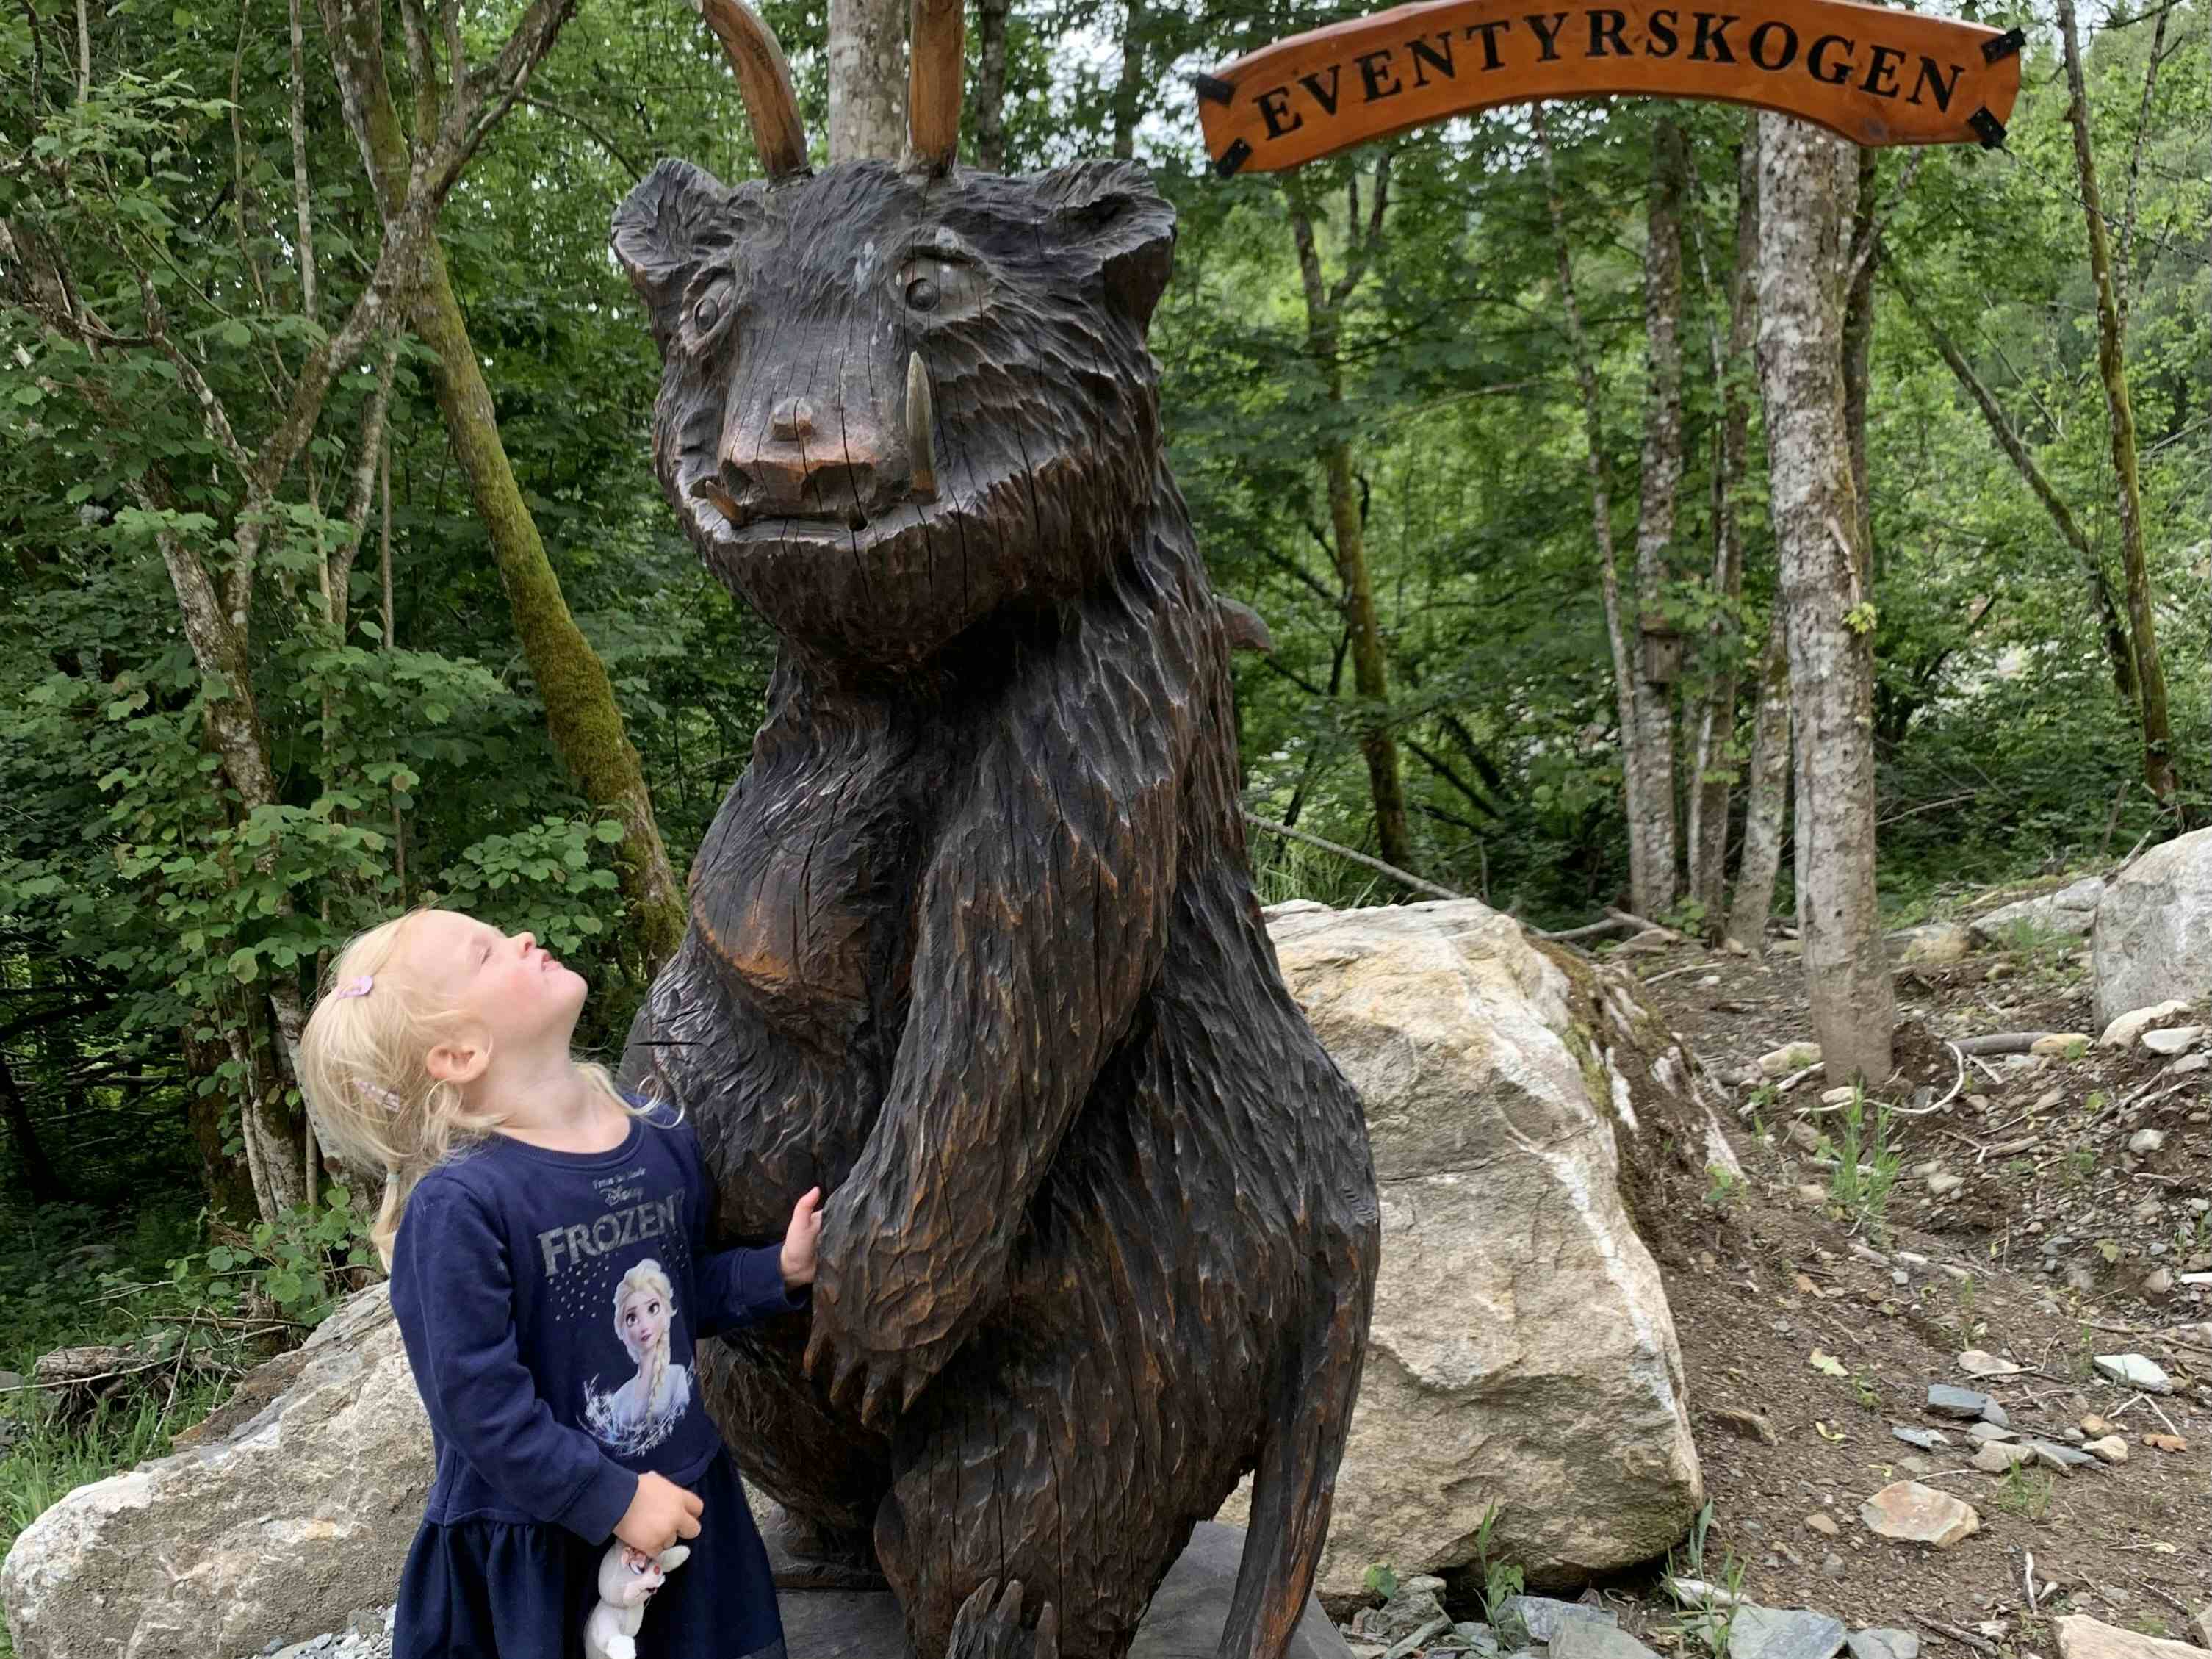 En jente som kikker på en stor, utskåret bjørn med horn.